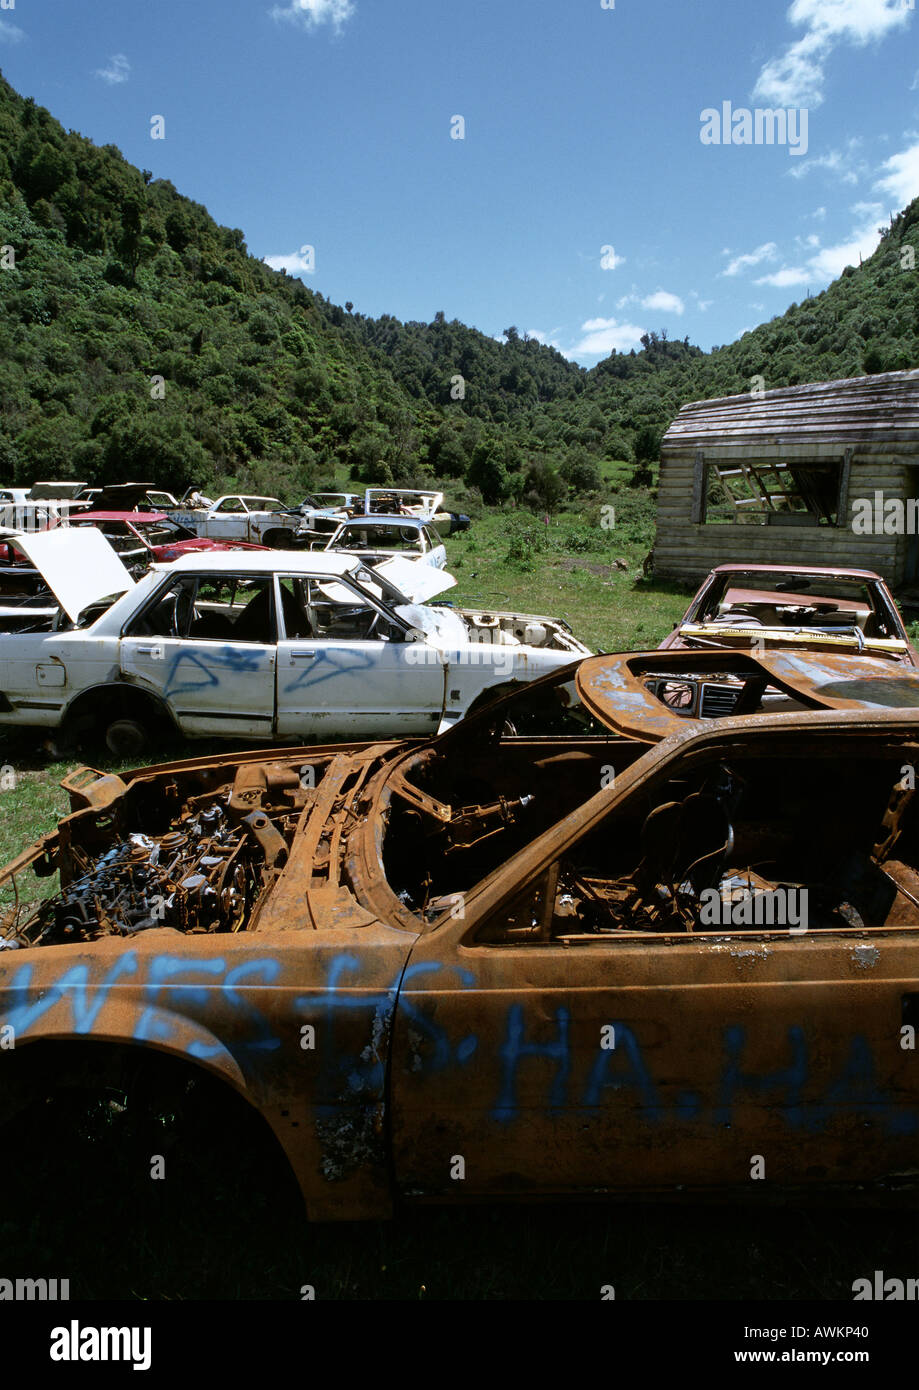 Auto junkyard in zona rurale Foto Stock